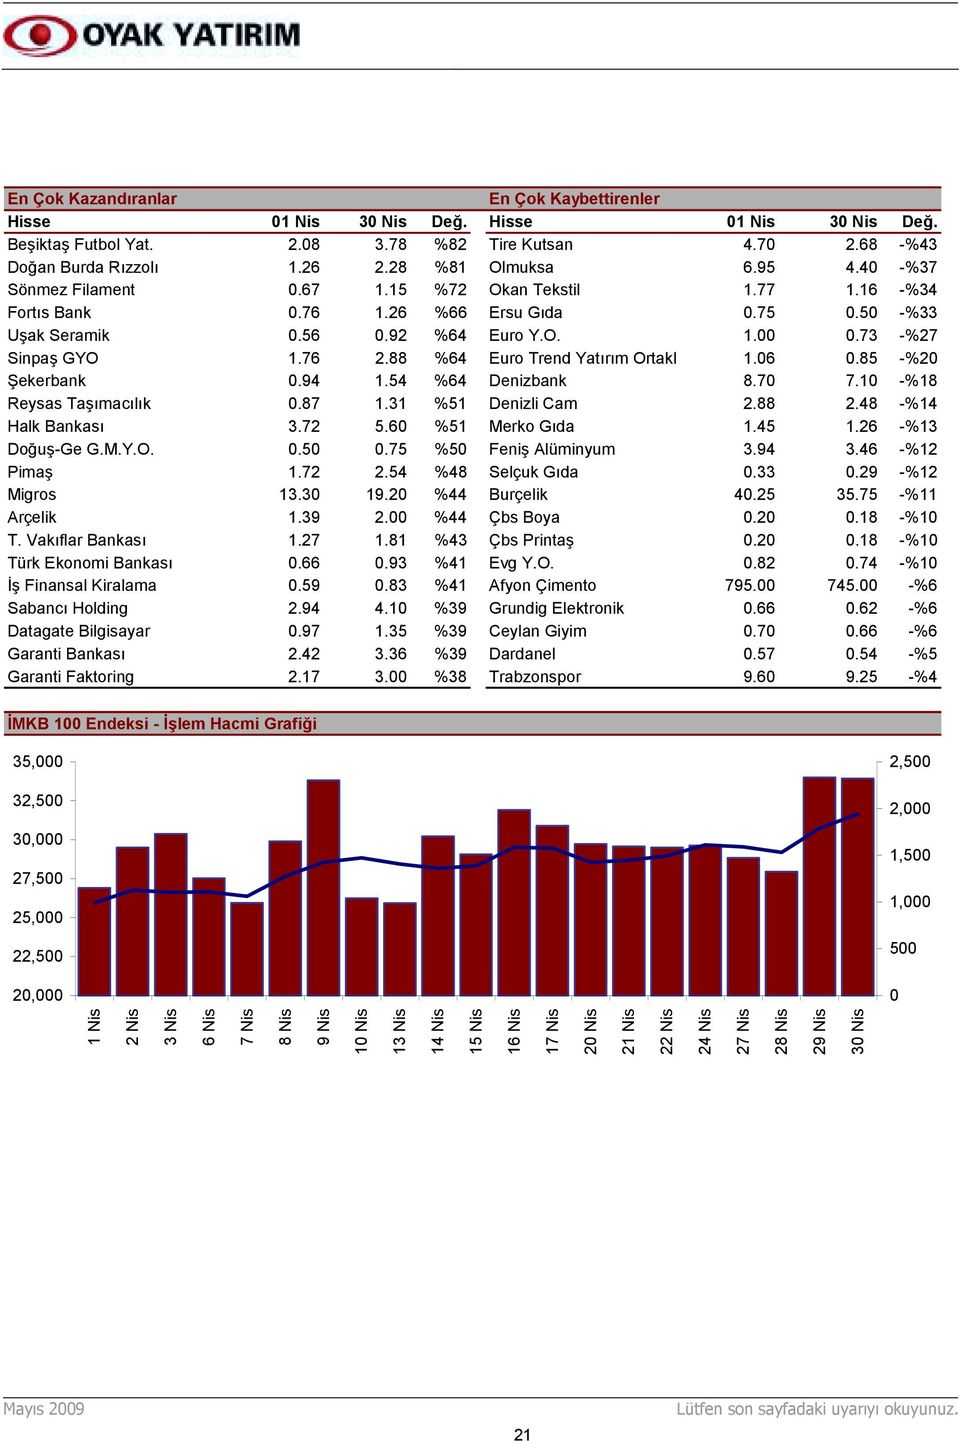 73 -%27 Sinpaş GYO 1.76 2.88 %64 6 Euro Trend Yatõrõm Ortakl 1.06 0.85 -%20 Şekerbank 0.94 1.54 %64 7 Denizbank 8.70 7.10 -%18 Reysas Taşõmacõlõk 0.87 1.31 %51 8 Denizli Cam 2.88 2.